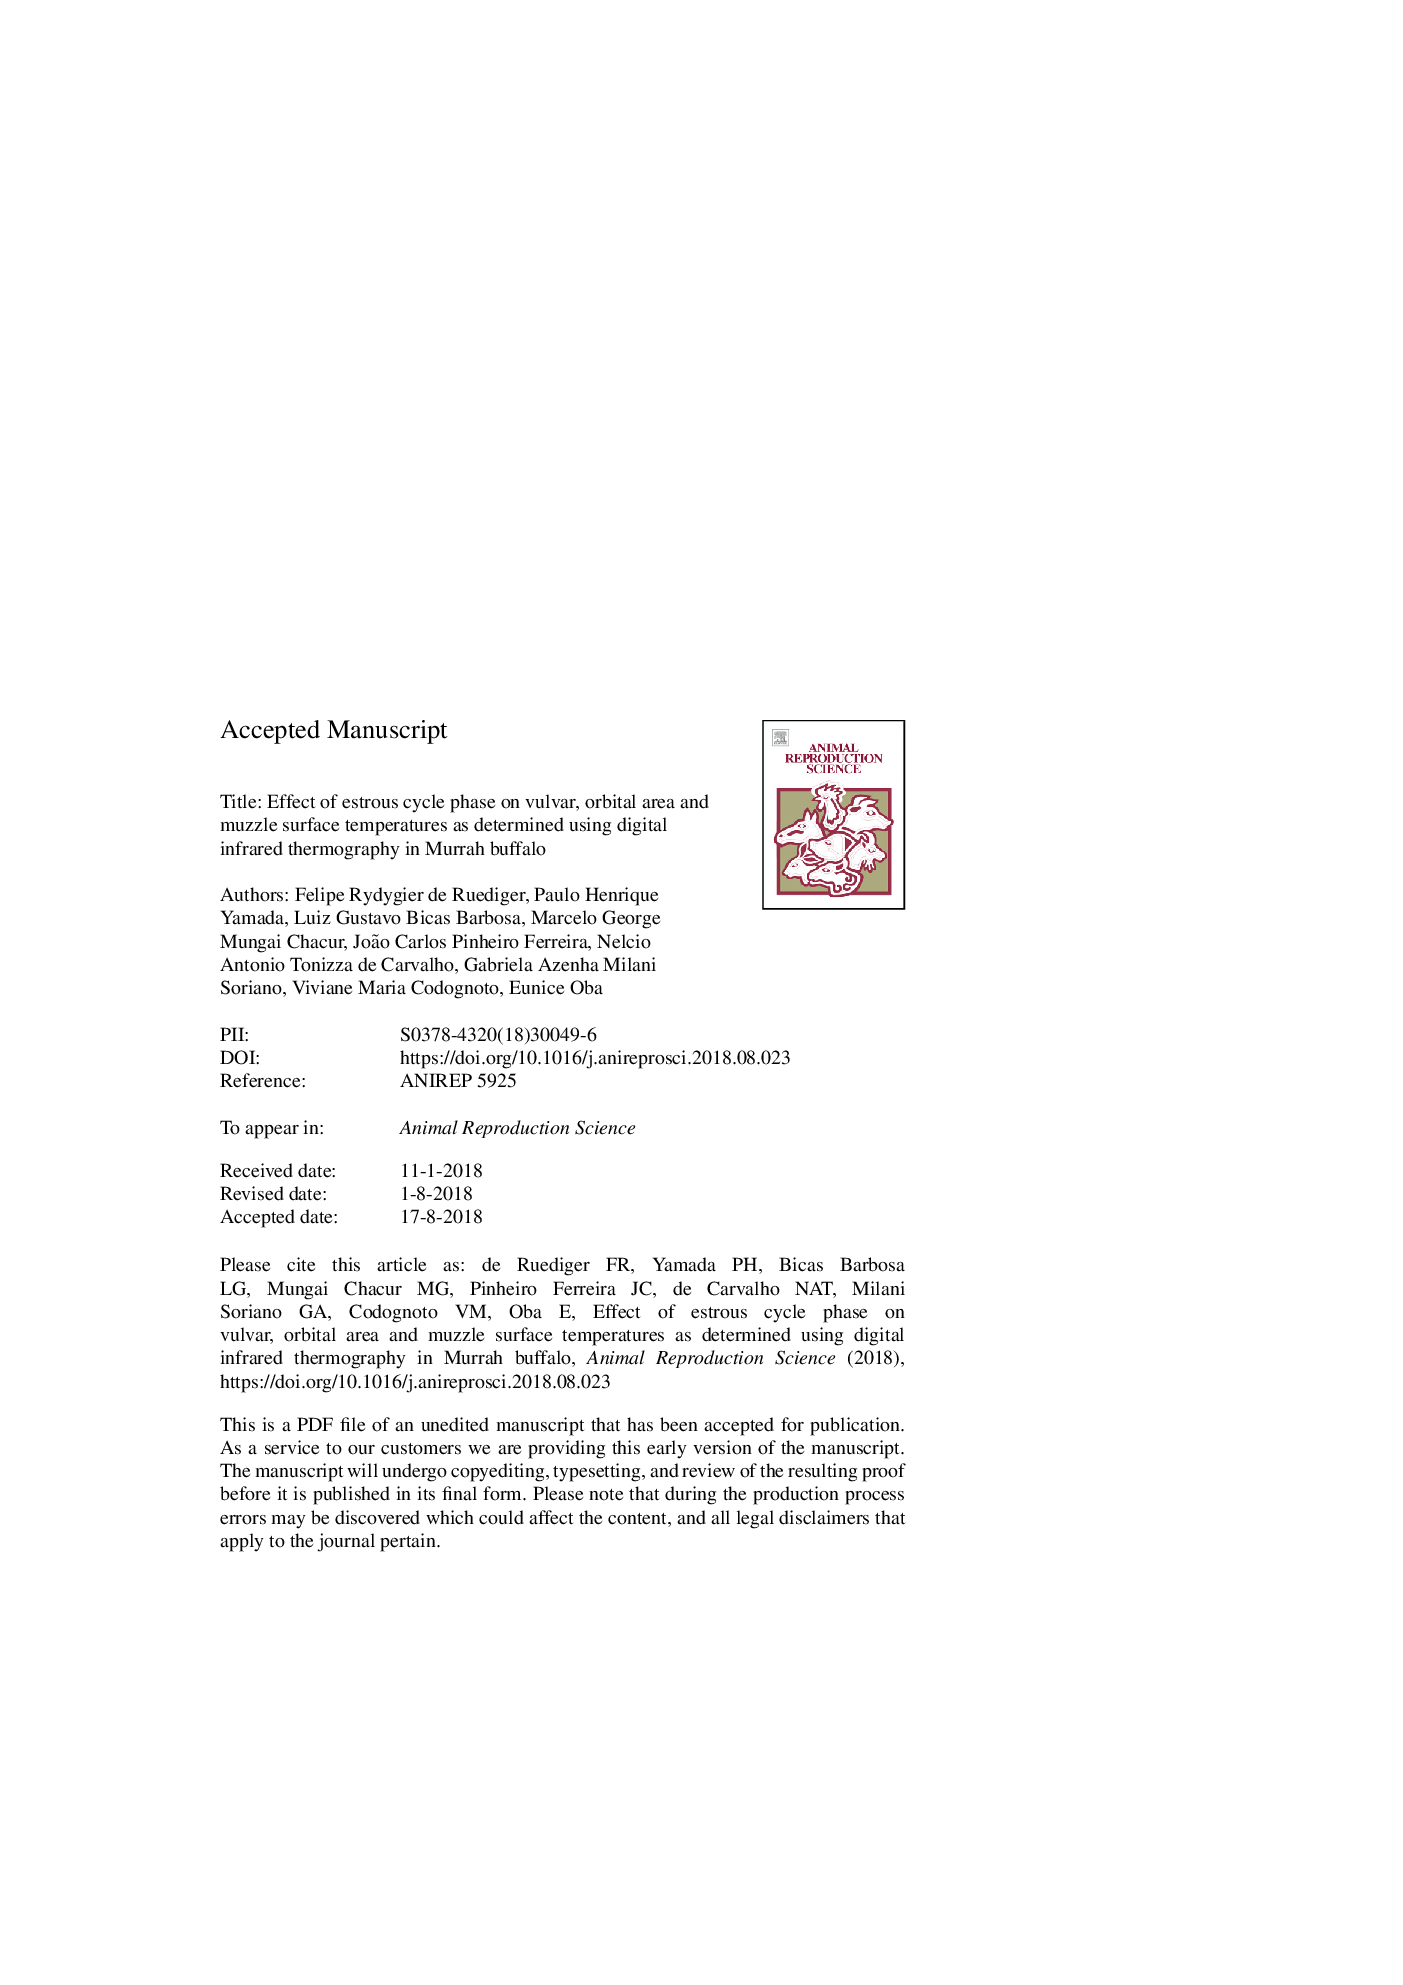 اثر فاز چرخه عصاره بر روی ولوو، ناحیه ای مداری و دمای سطحی مرطوب، با استفاده از ترموگرافی مادون قرمز دیجیتال در بوفالو